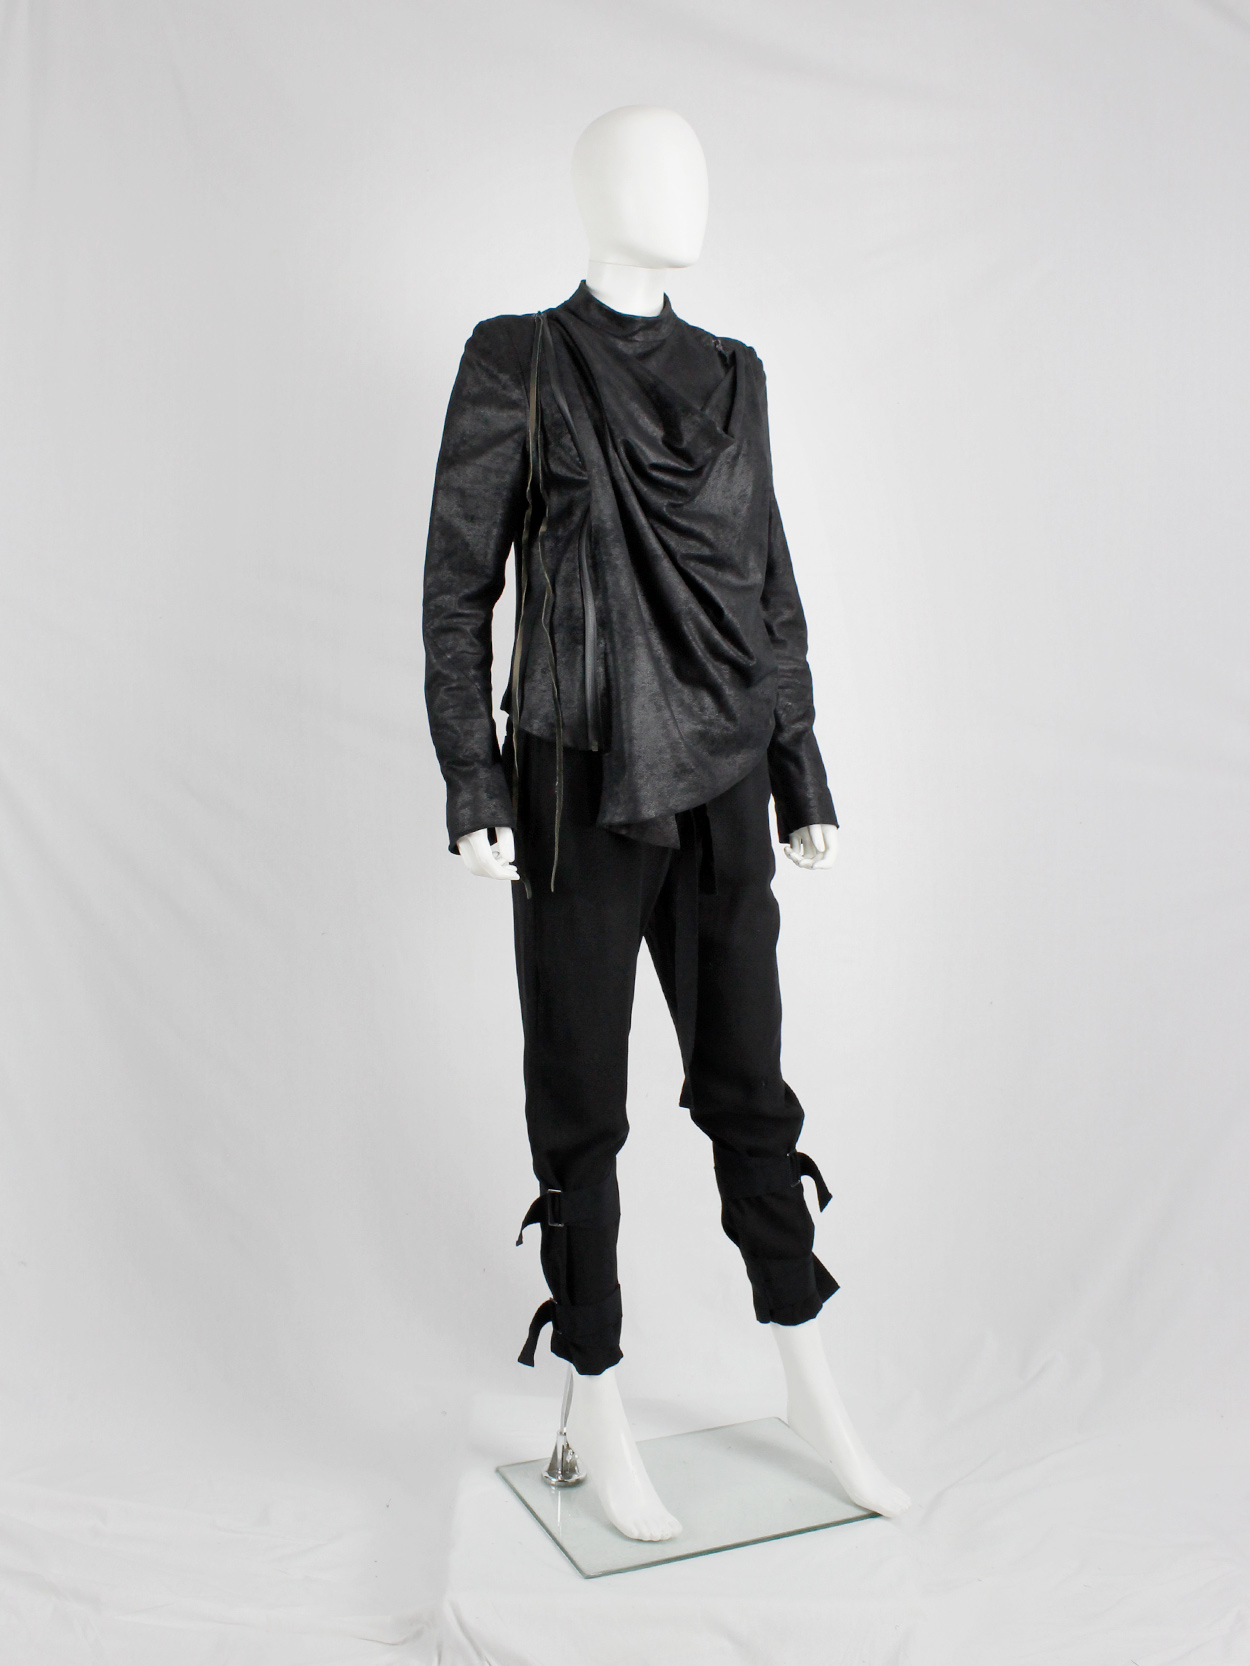 af Vandevorst black fencing jacket with front cowl drape fall 2010 (10)